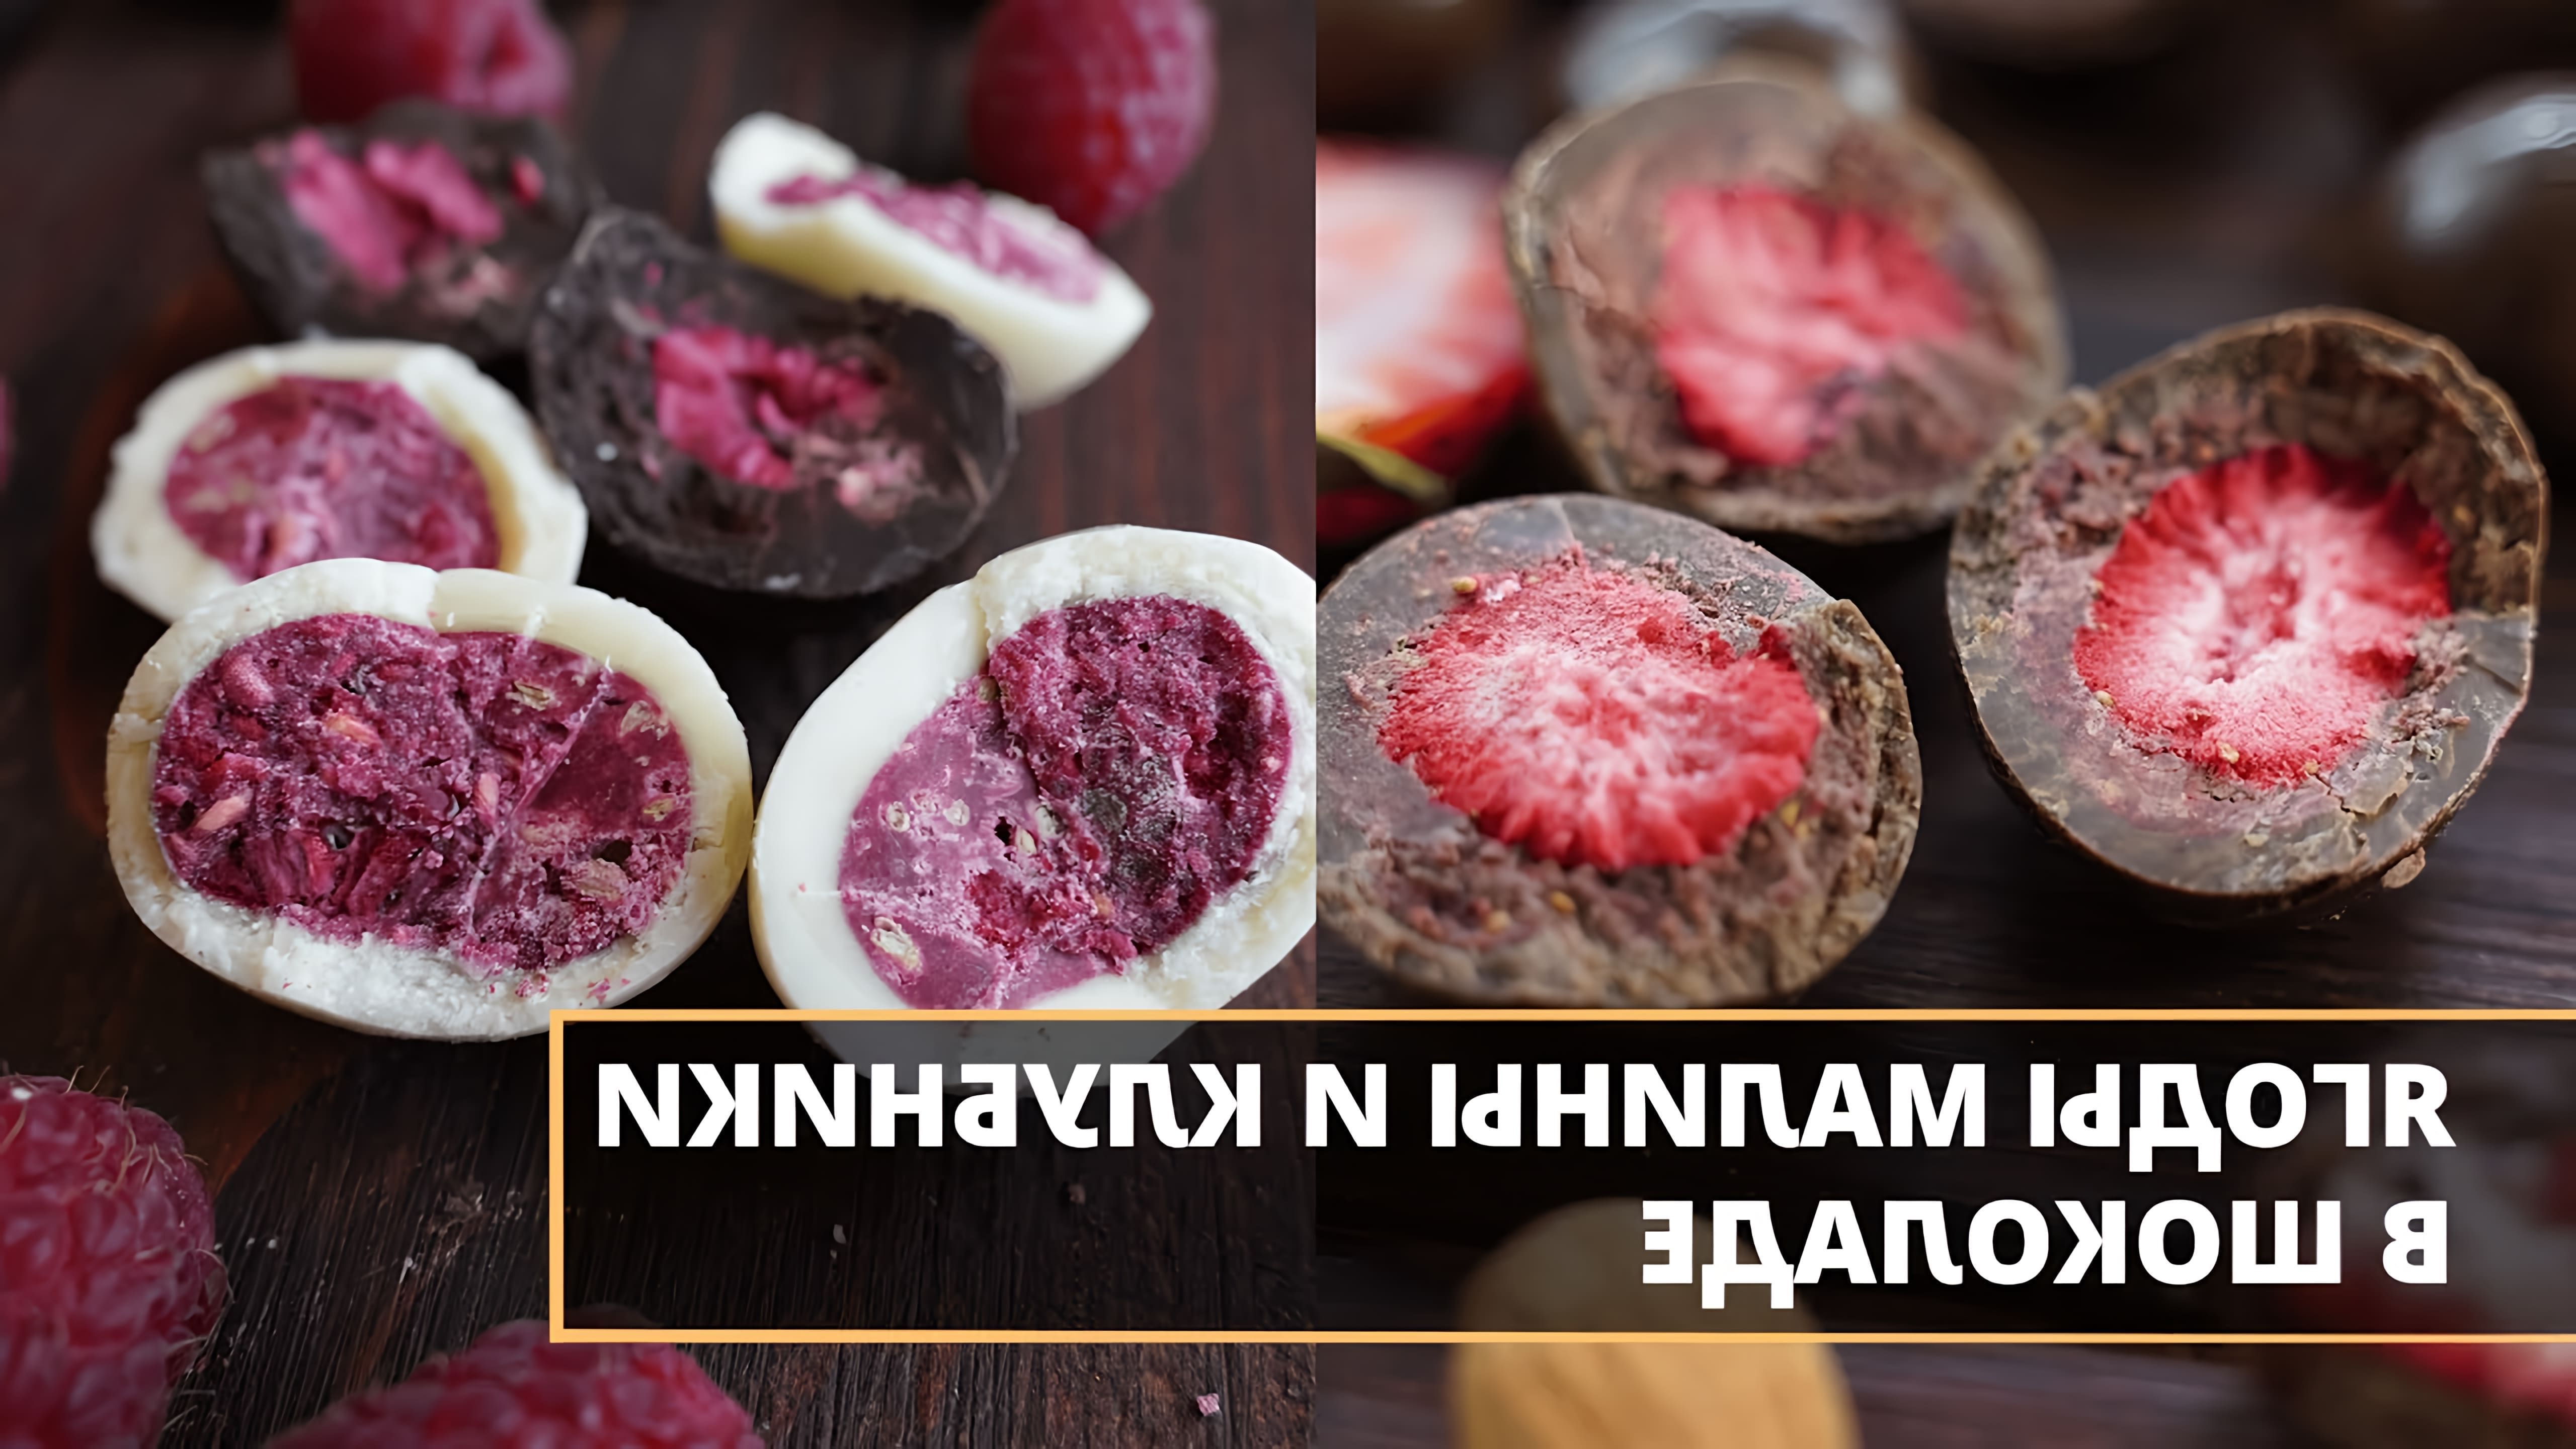 Коллекция вкуснейших ягод в шоколаде ⠀ Низкотемпературный способ обработки ягод позволяет сохранить все... 